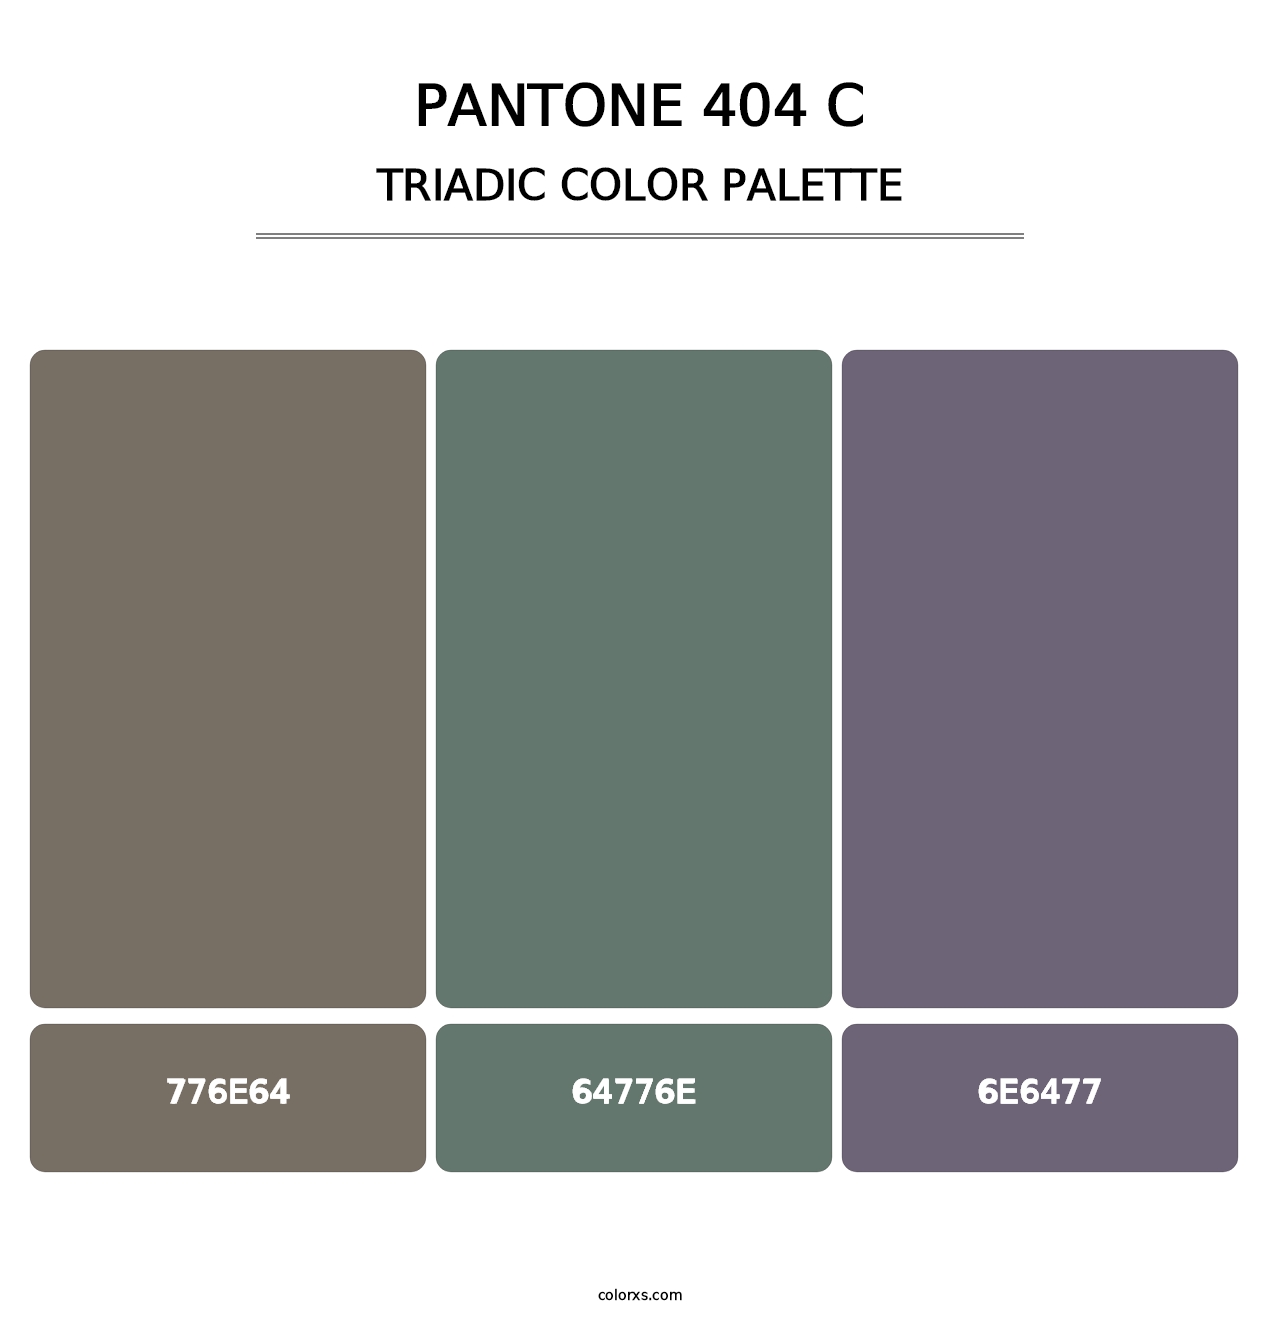 PANTONE 404 C - Triadic Color Palette